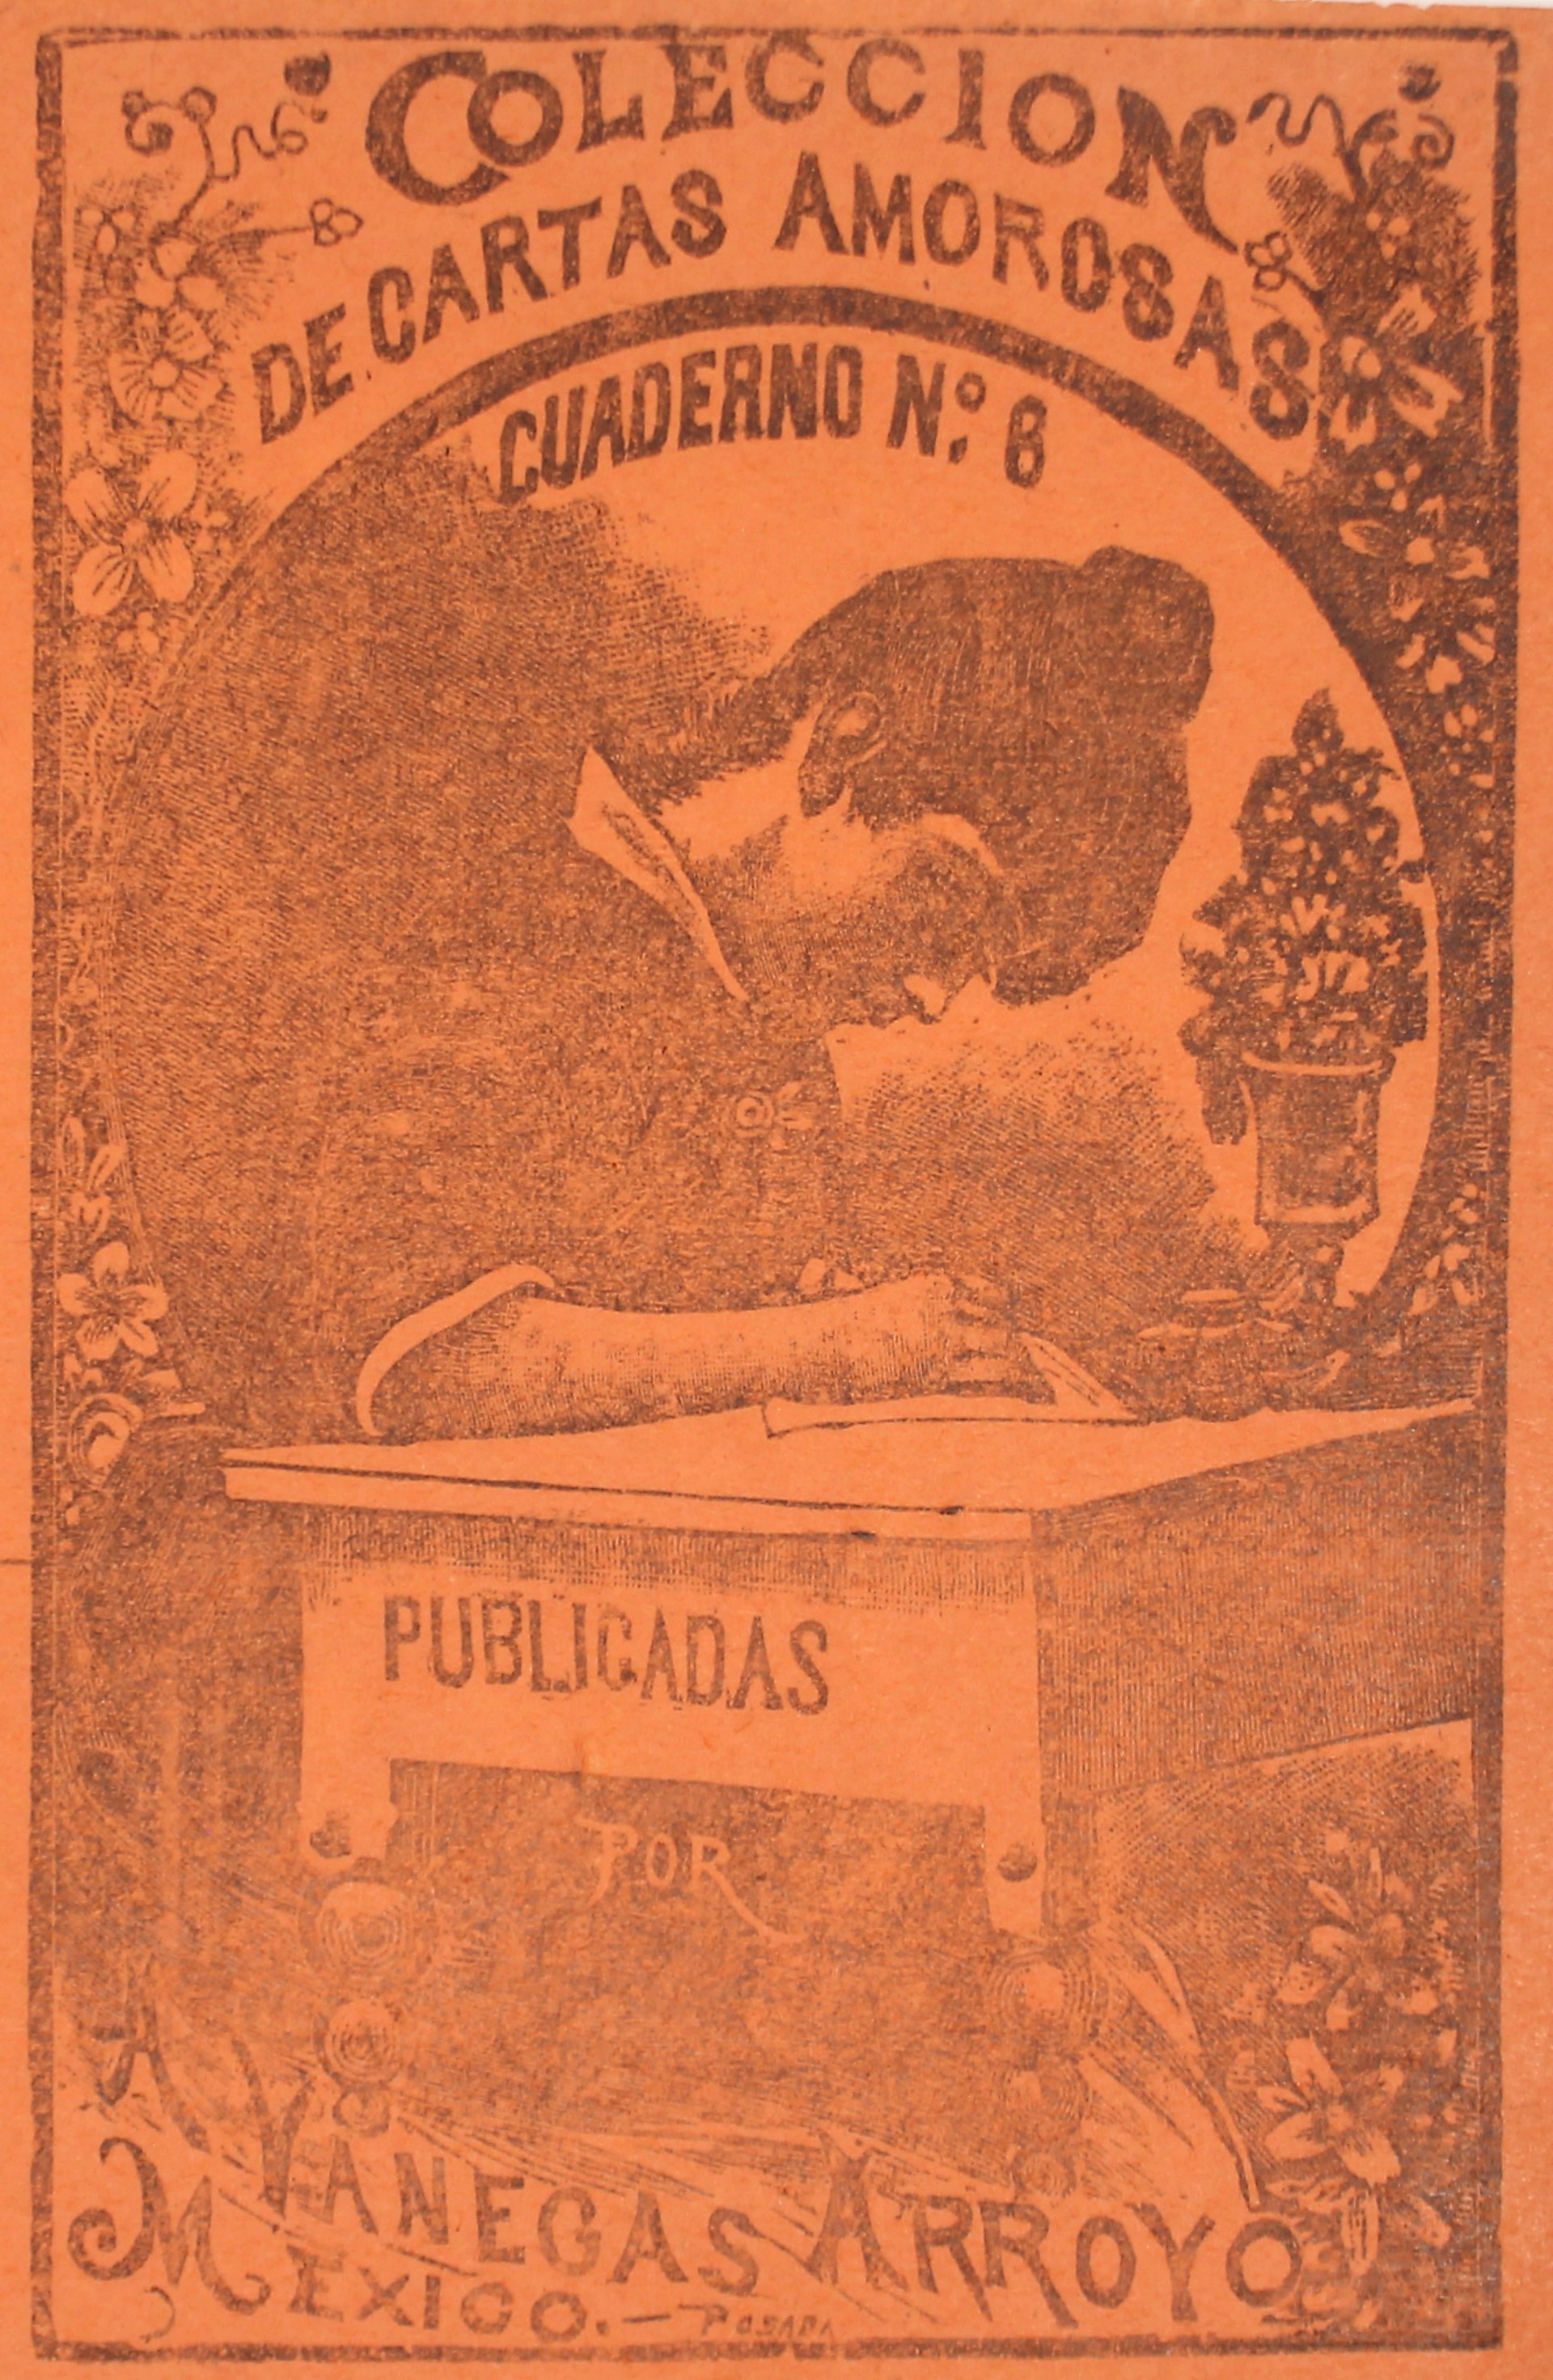  Colección de Cartas Amorosas Cuaderno 6 (2nd Impression) by José Guadalupe Posada